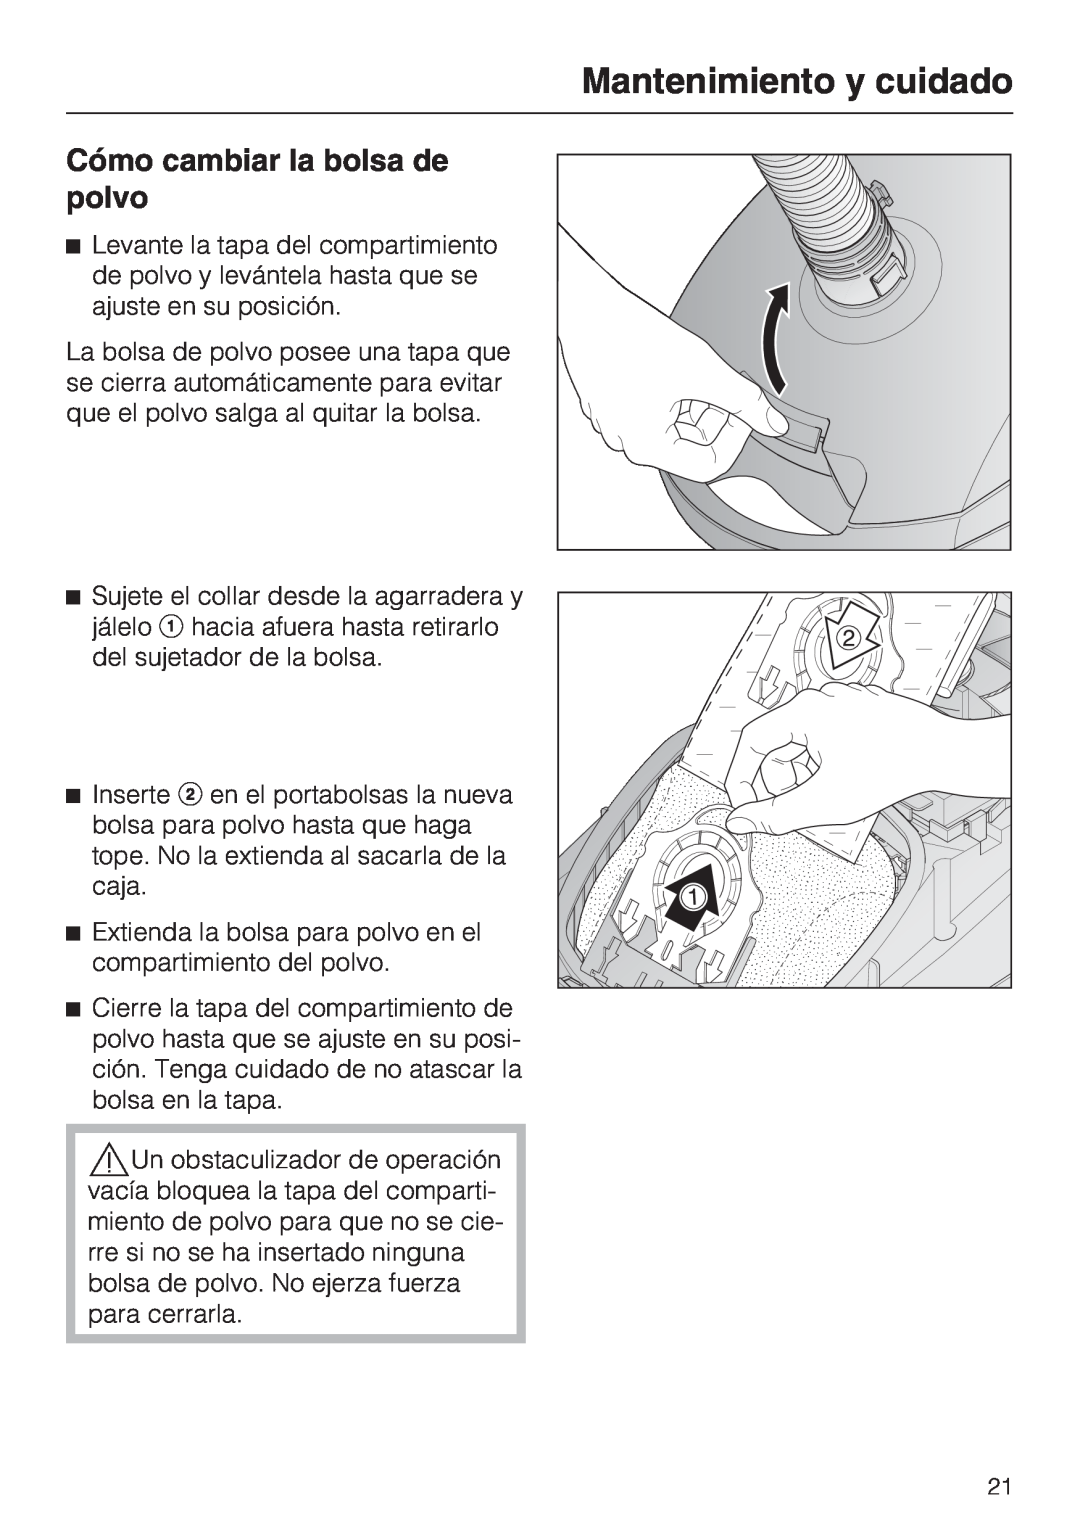 Miele S 2001 manual Cómo cambiar la bolsa de polvo, Mantenimiento y cuidado 